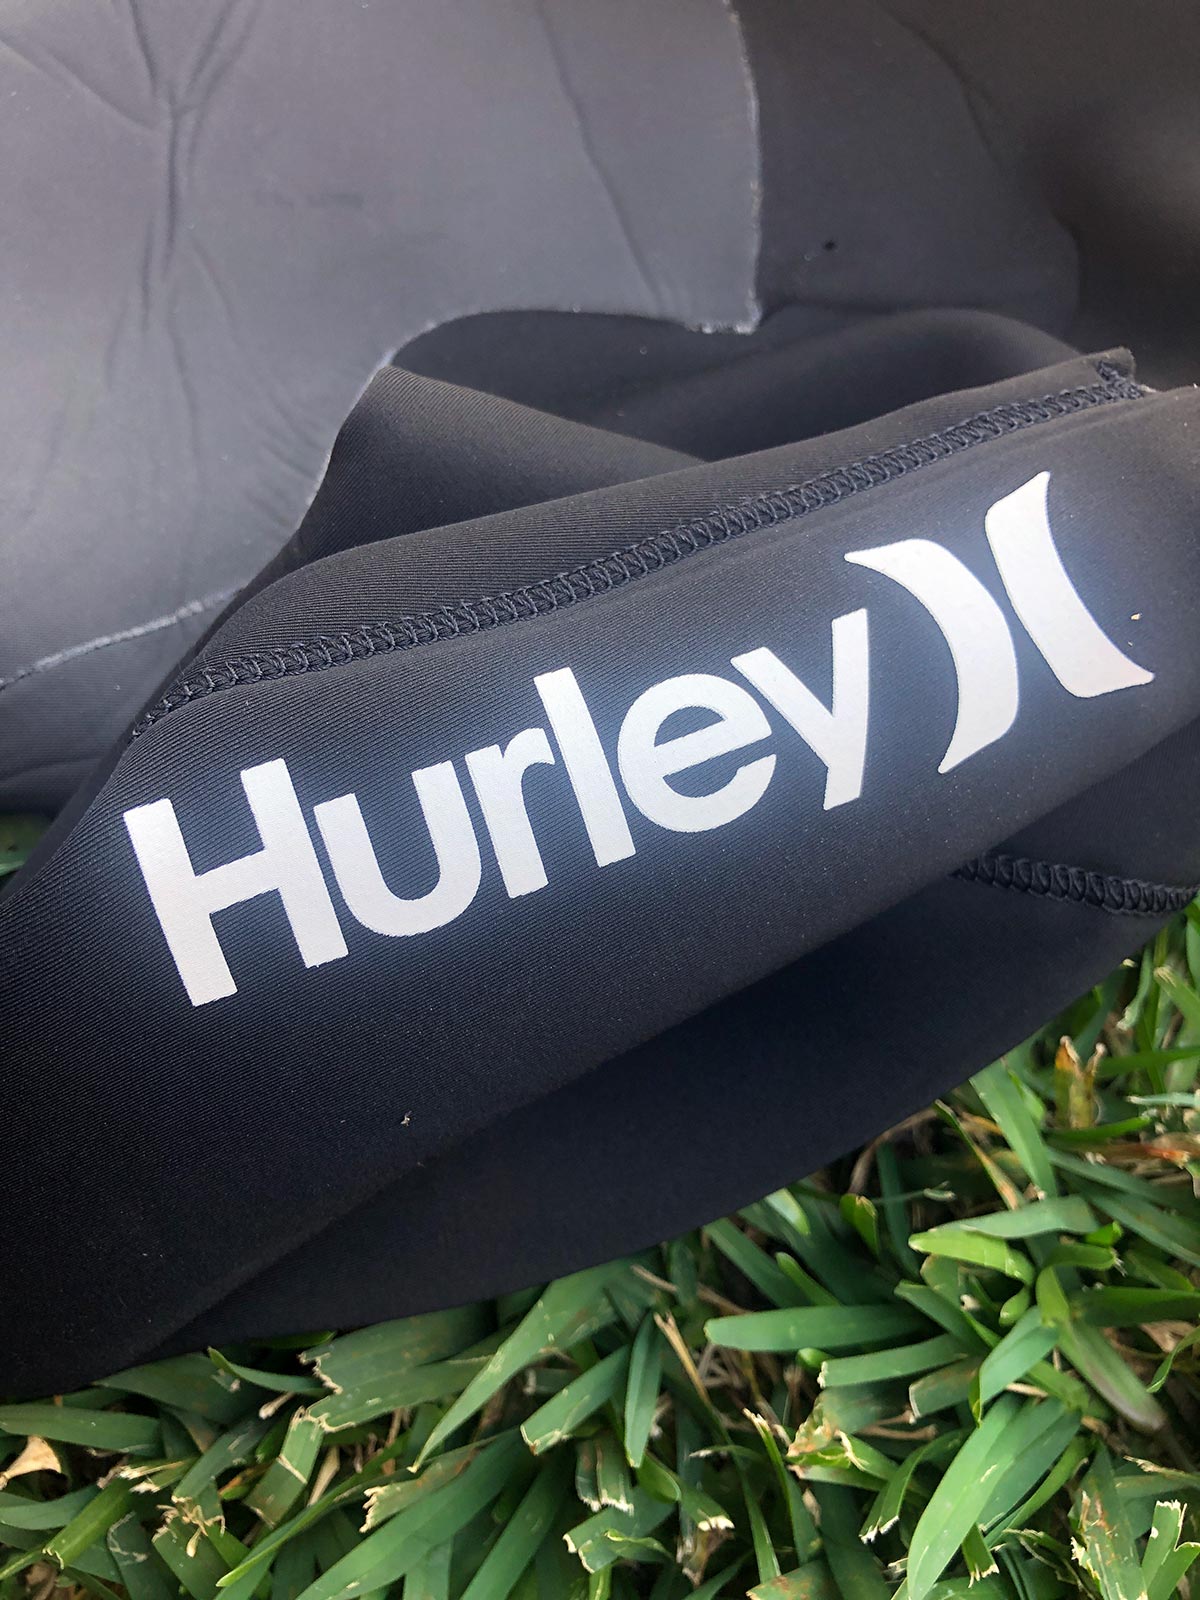 Hurley Advantage Plus Wetsuit Review